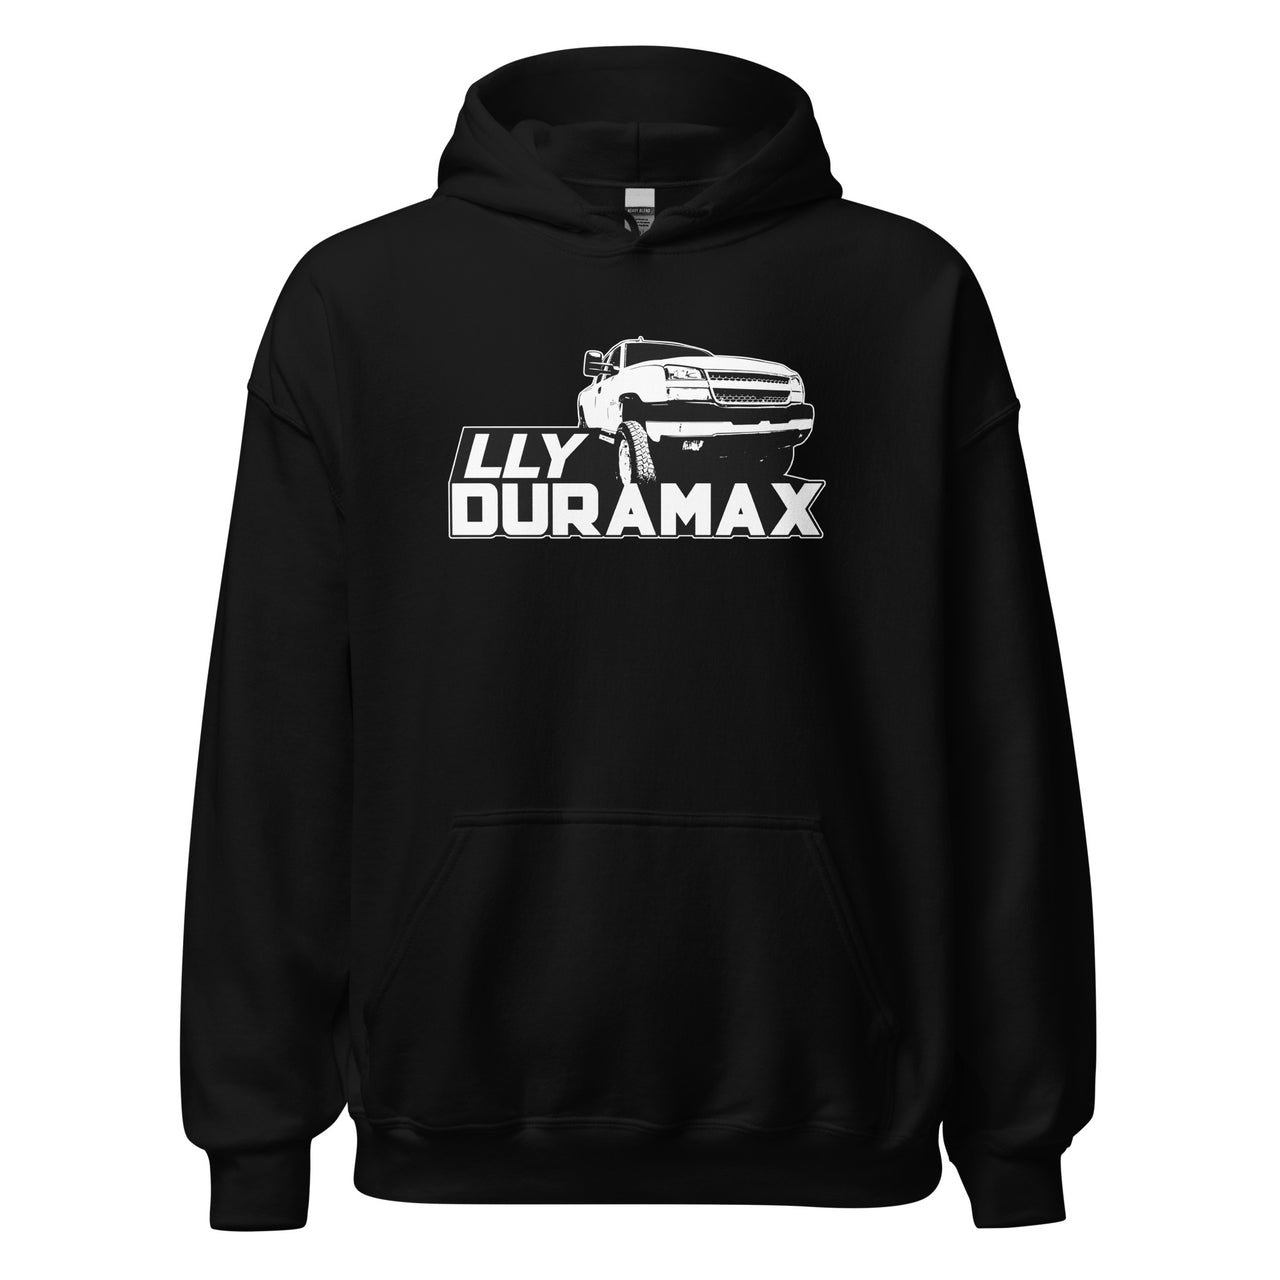 LLY Duramax Truck Hoodie Sweatshirt in black